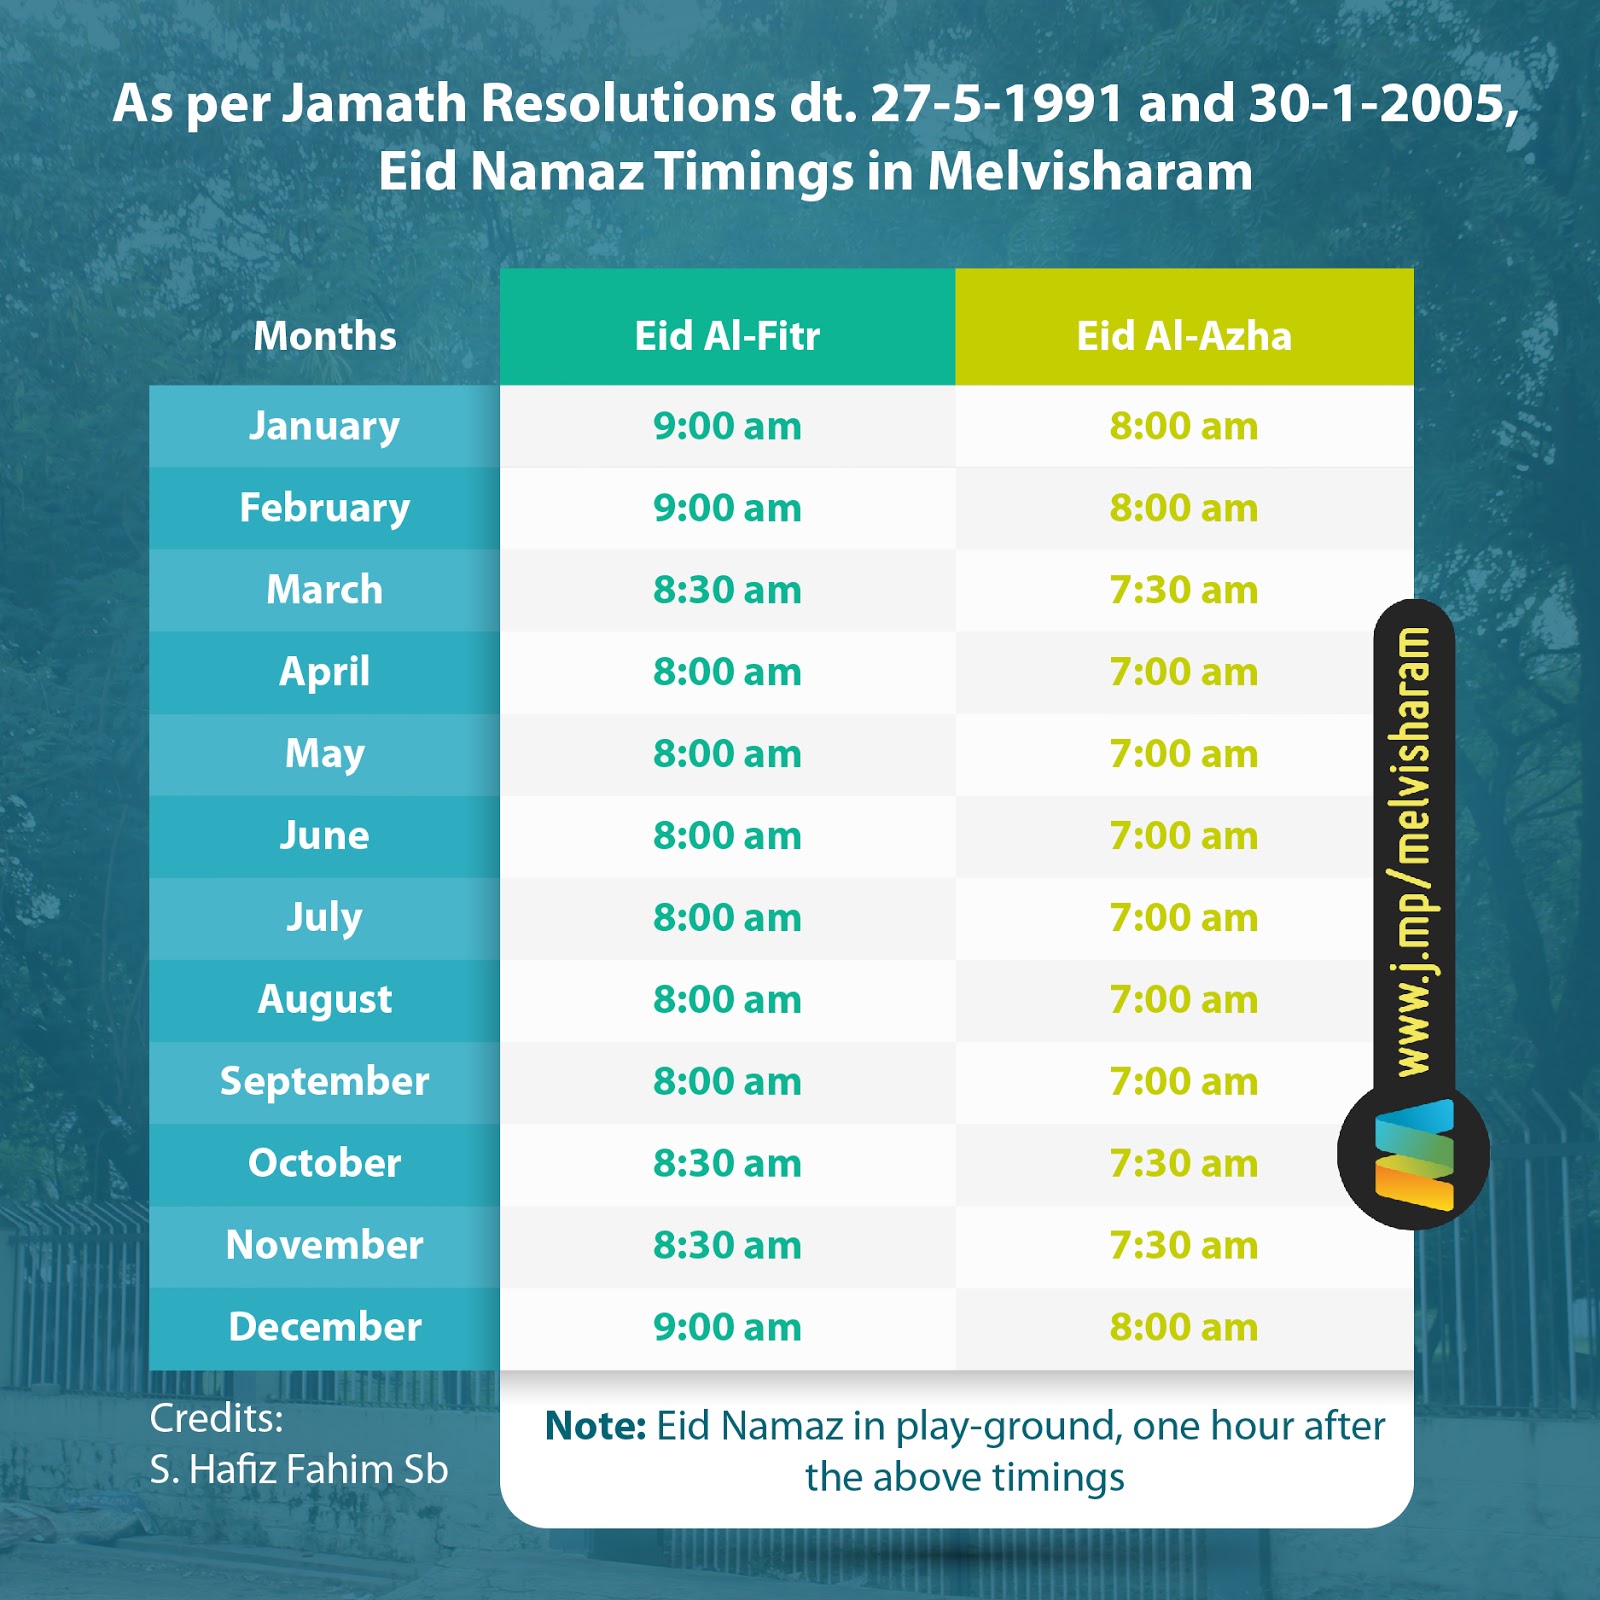 Eid Namaz Timing Based on Month